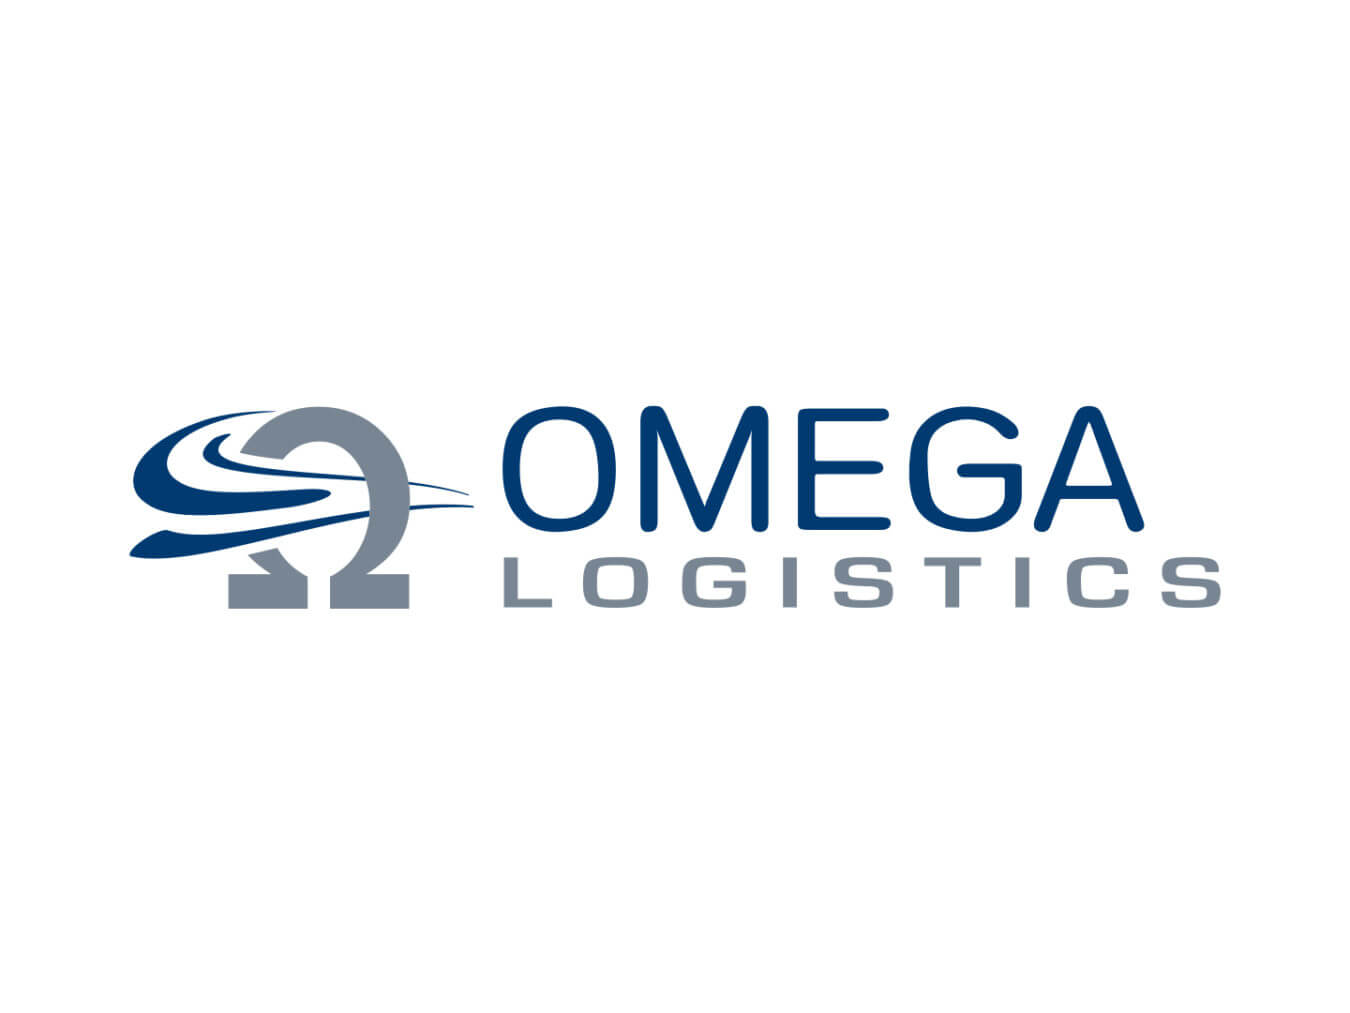 Omega Logistics